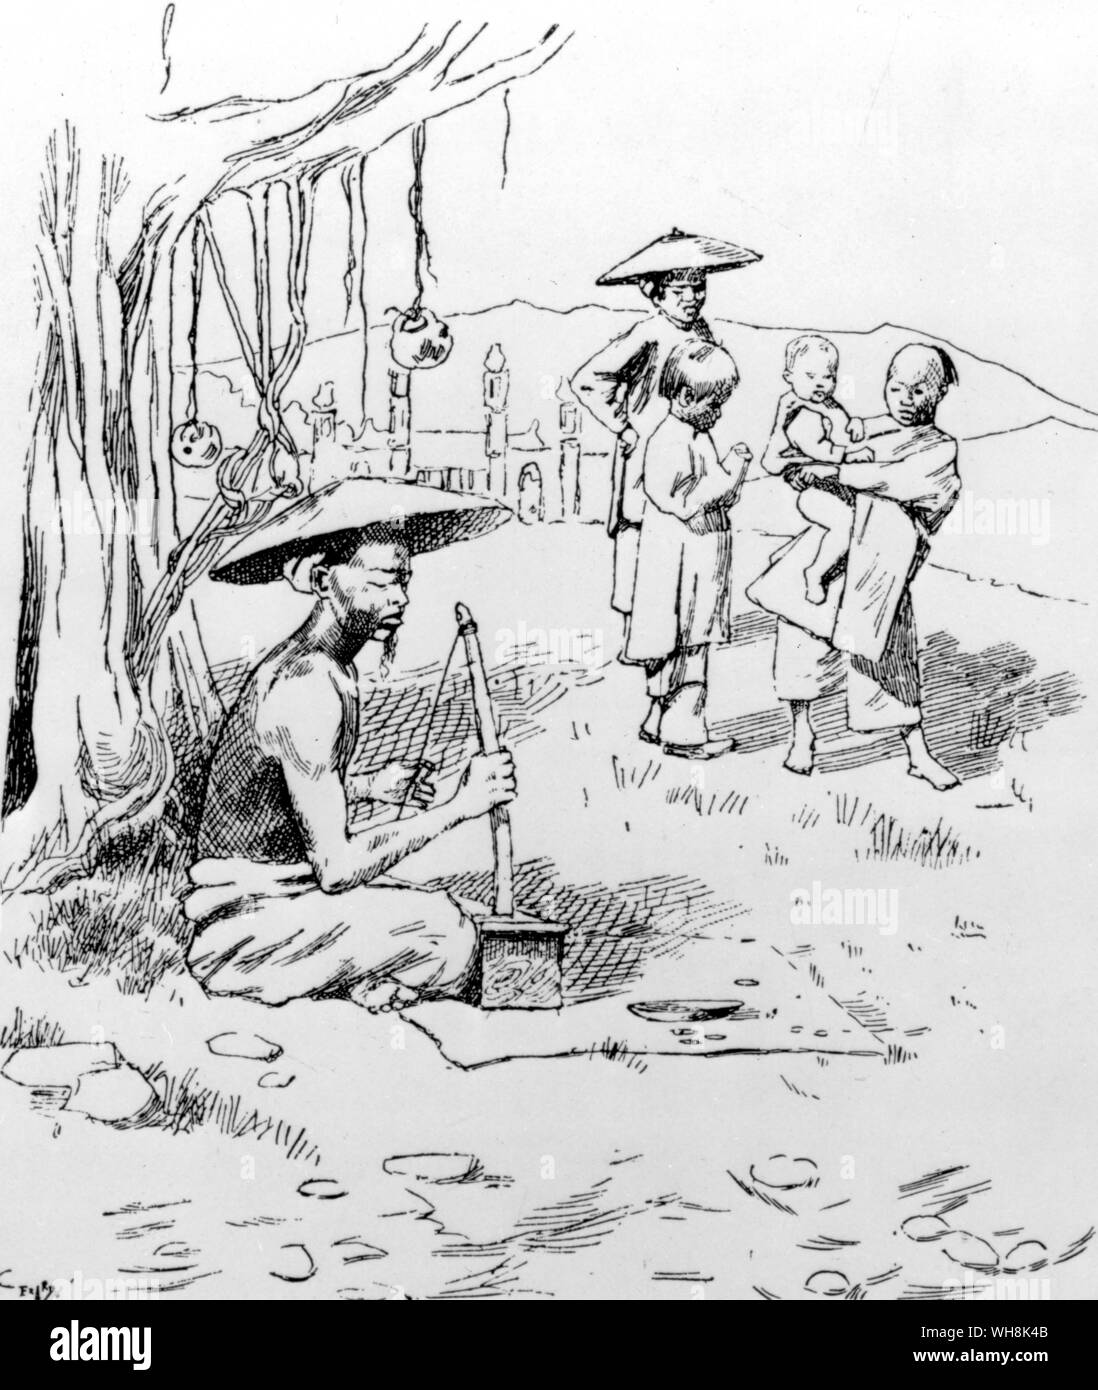 Native Spione wurden ausgiebig verwendet Bewegungen zu melden und zu handeln, als Boten namens coolie Straßenbahnen Indochina 1883-91 Stockfoto